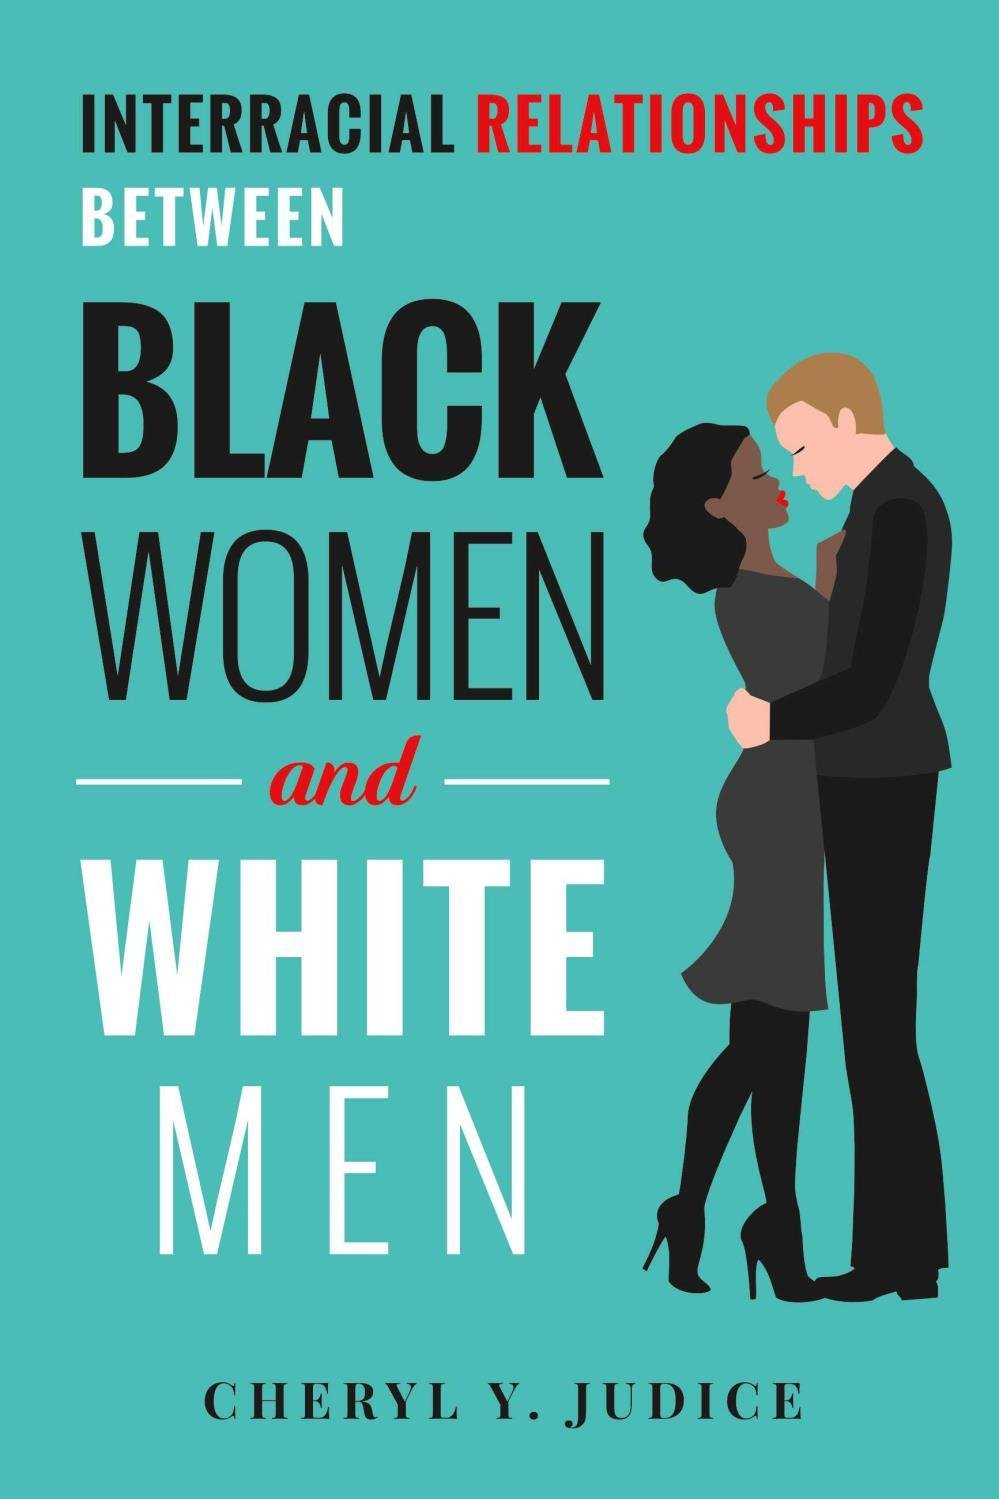 White men love black women